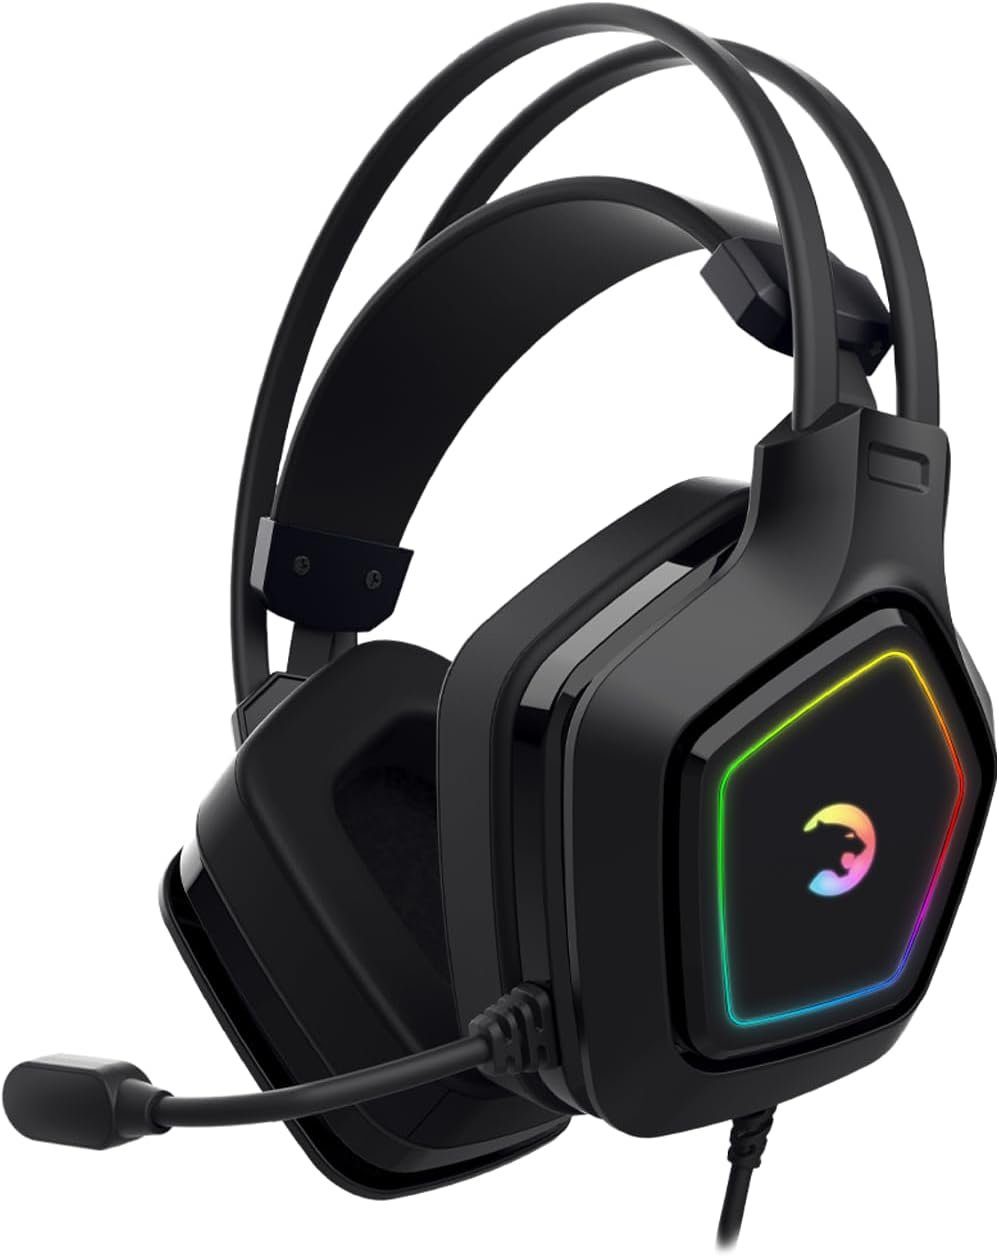 GAMEPOWER Gaming-Headset (Wired Headphones, Mit Kabel, 7.1 Surround RGB, kabelgebundene Kopfhörer mit 50-mm-Treibern Mikrofon) | Kopfhörer